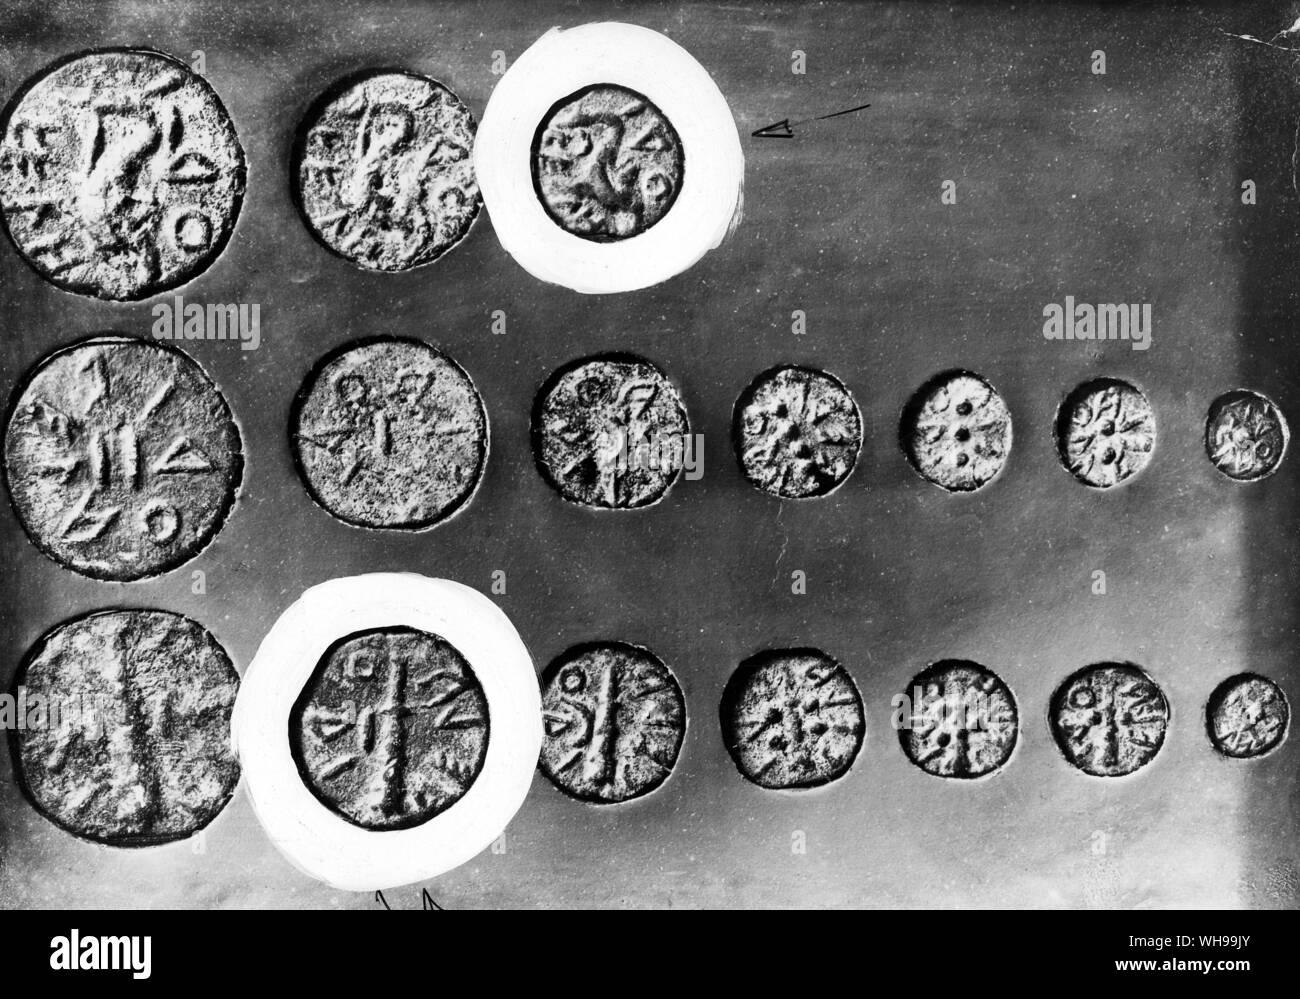 Molte città Etuscan coniare le proprie monete tra cui Volterra Foto Stock